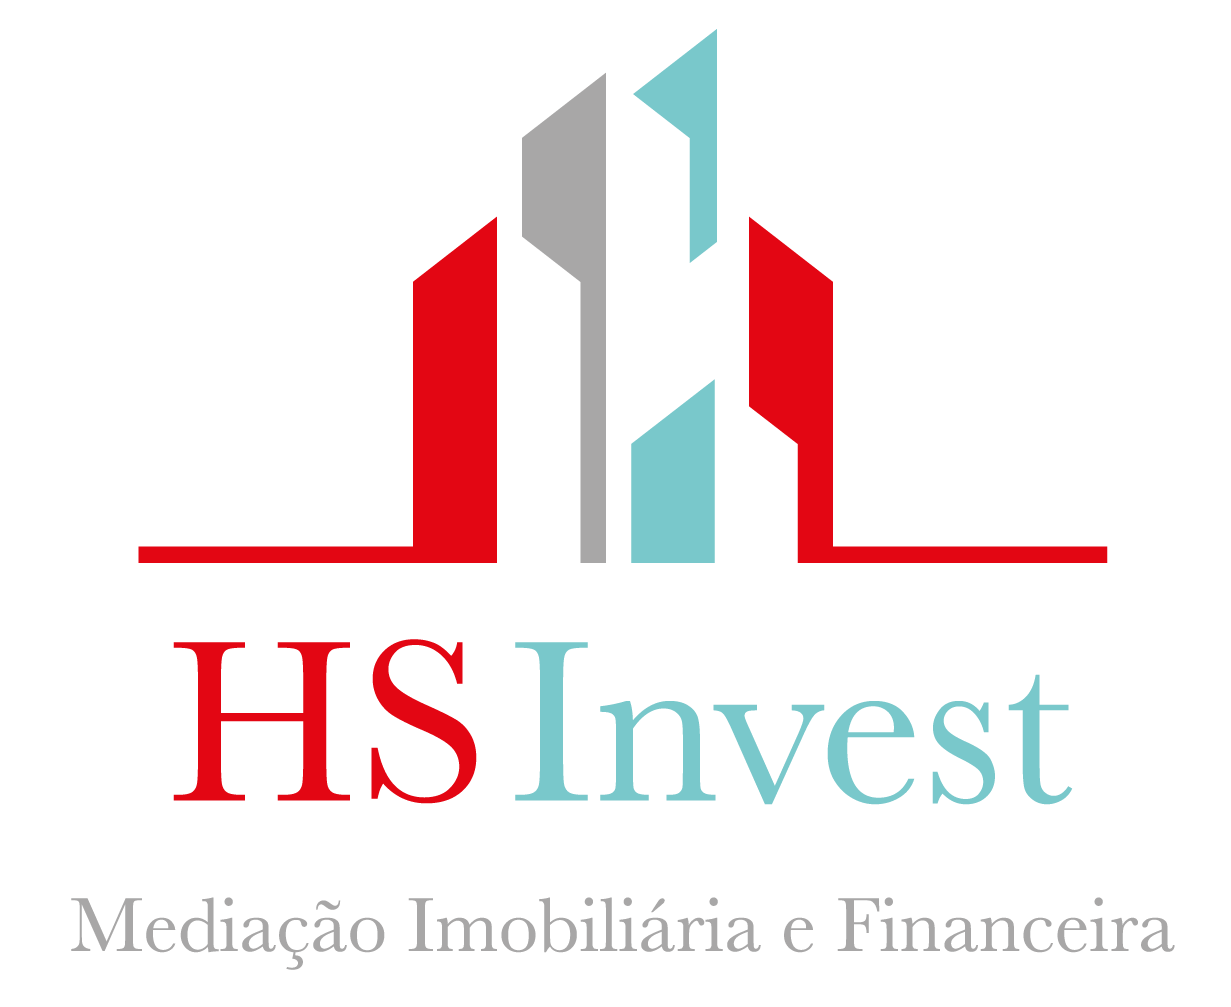 HSInvest Mediação Imobiliária e Financeira - Agent Contact